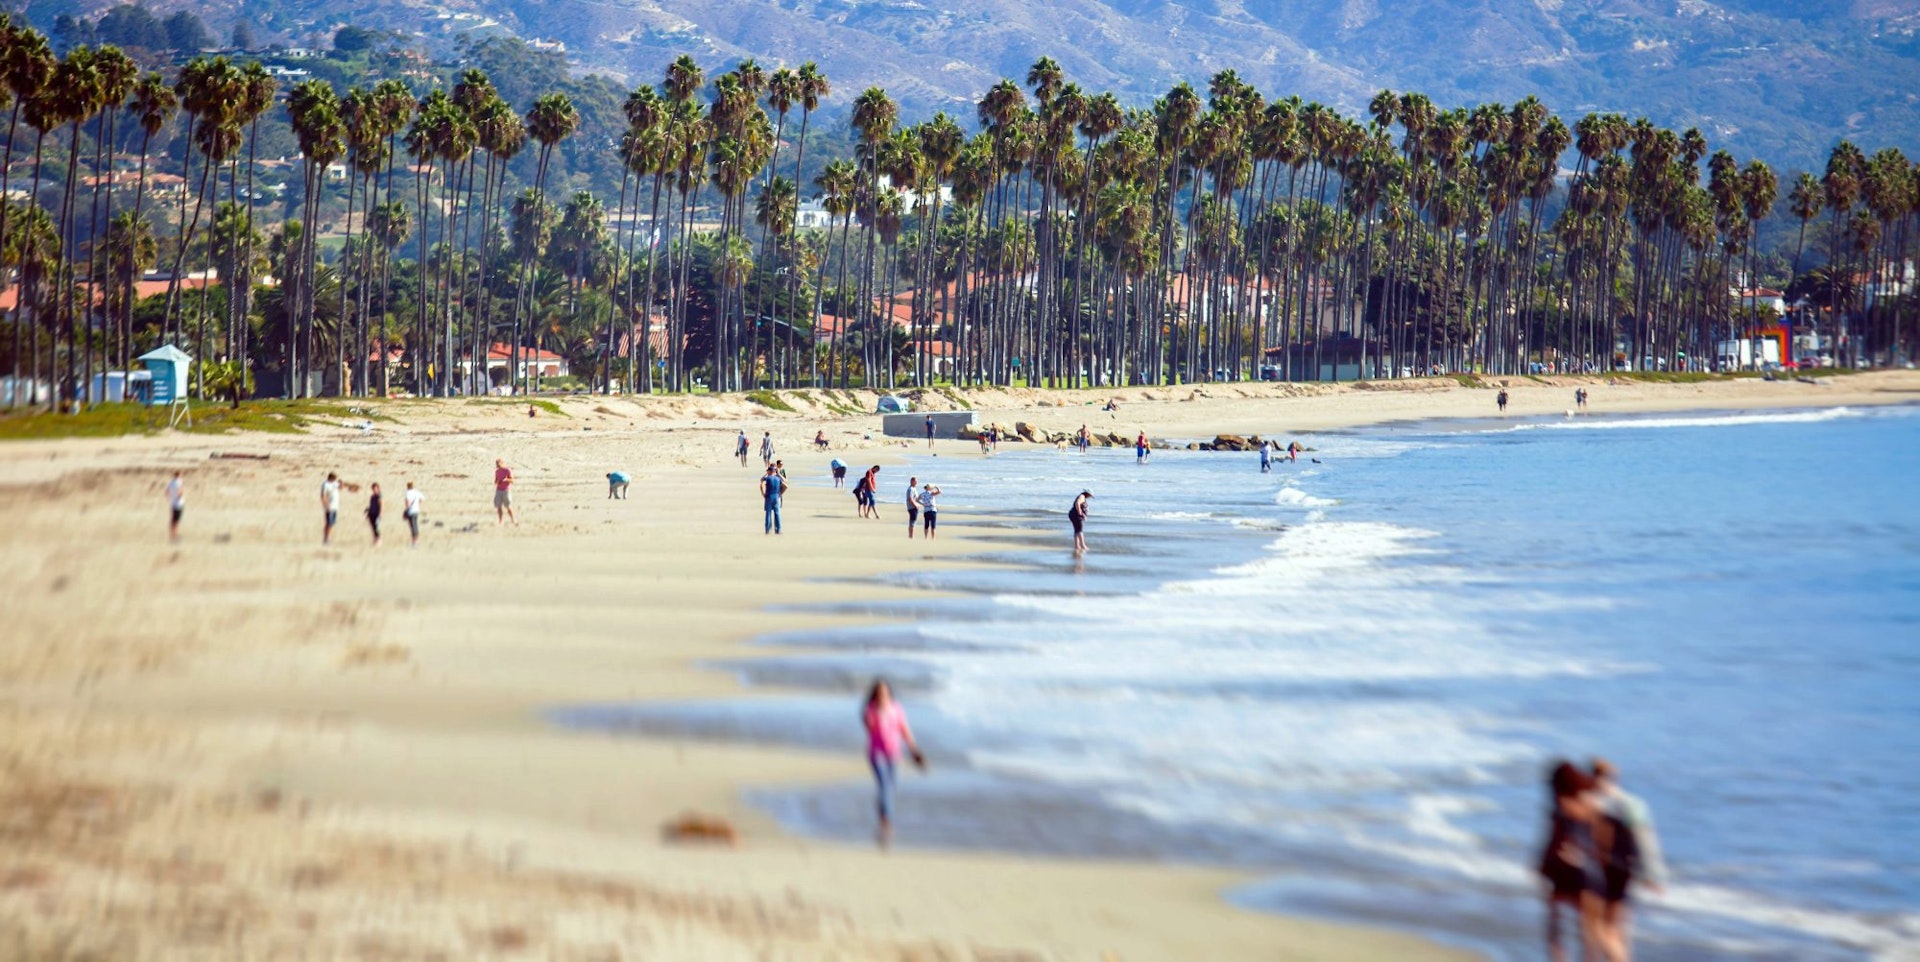 Beautiful view of Santa Barbara ocean front walk